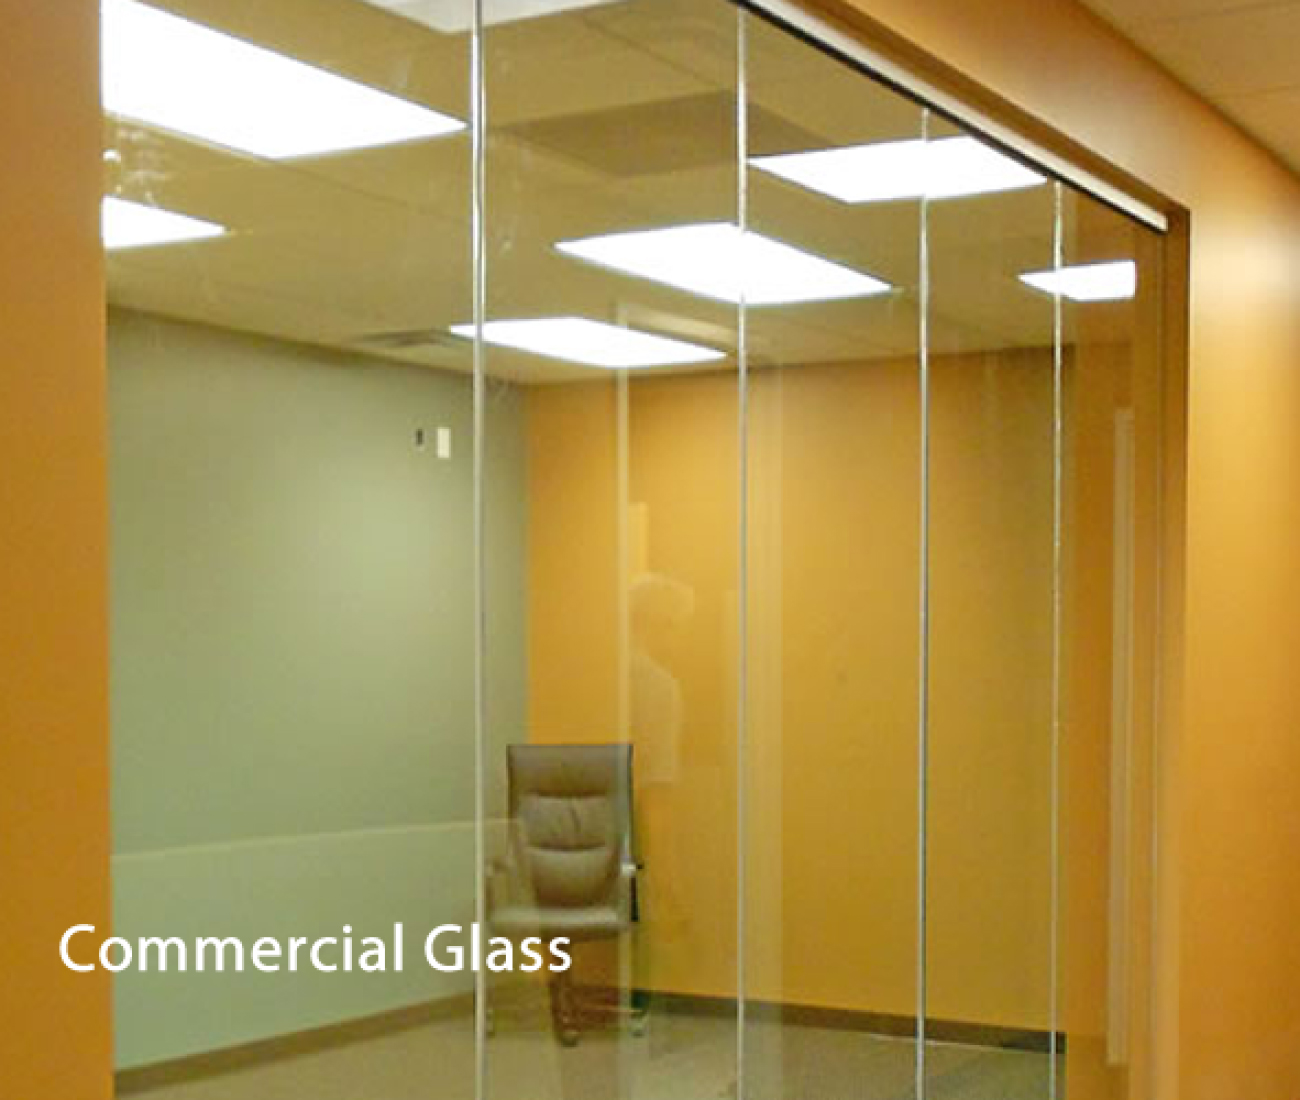 commercialglass-1300x1100.jpg